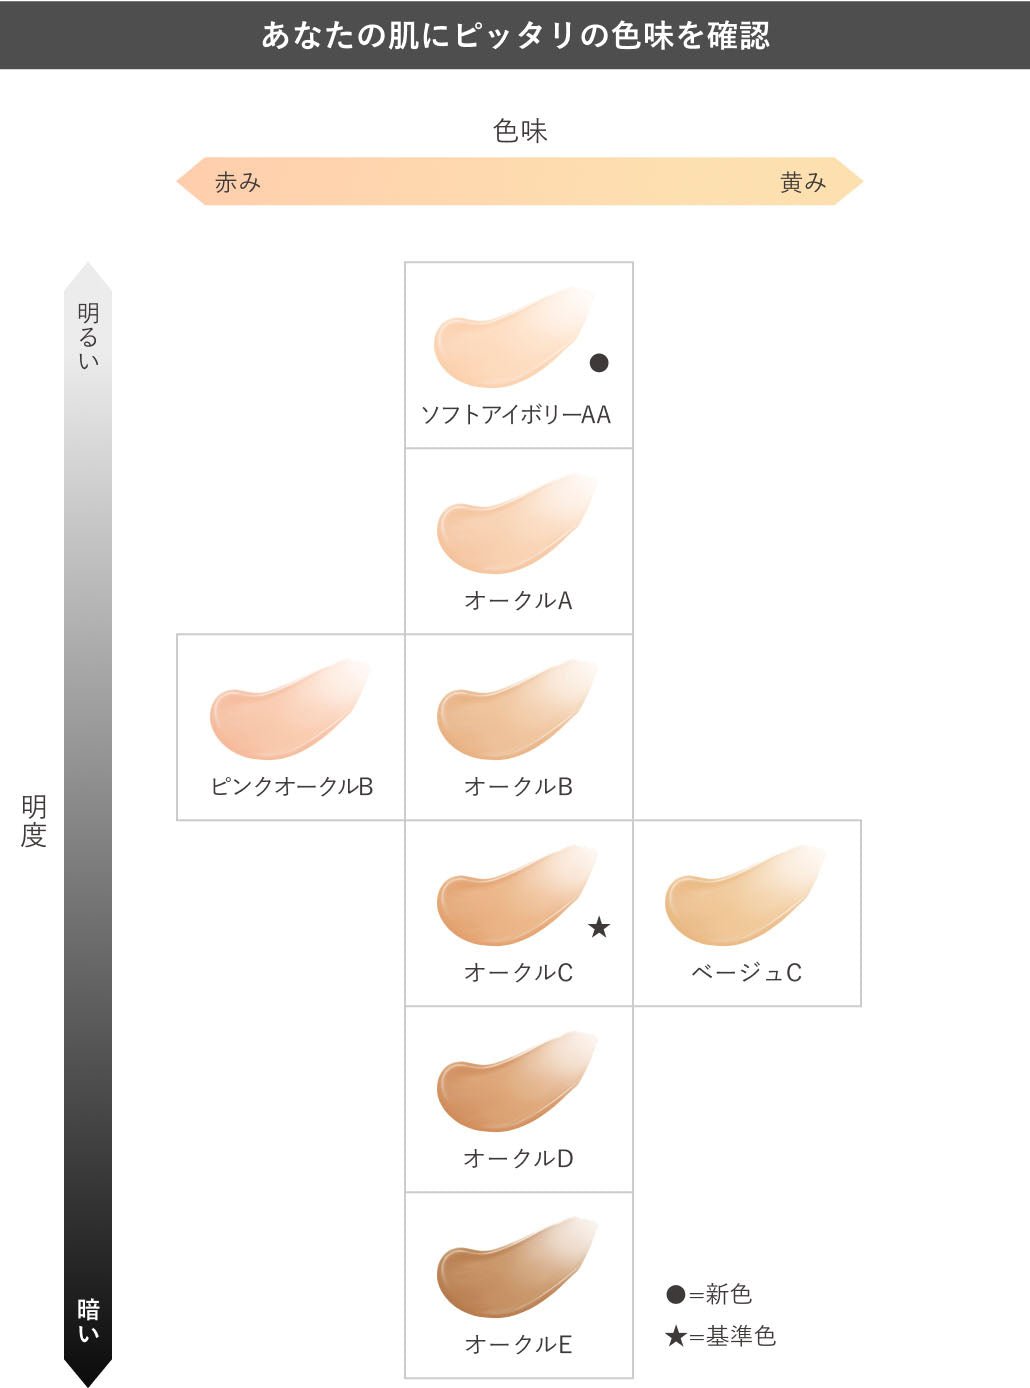 Kanebo Comfort Skin Wear - Ichiban Mart